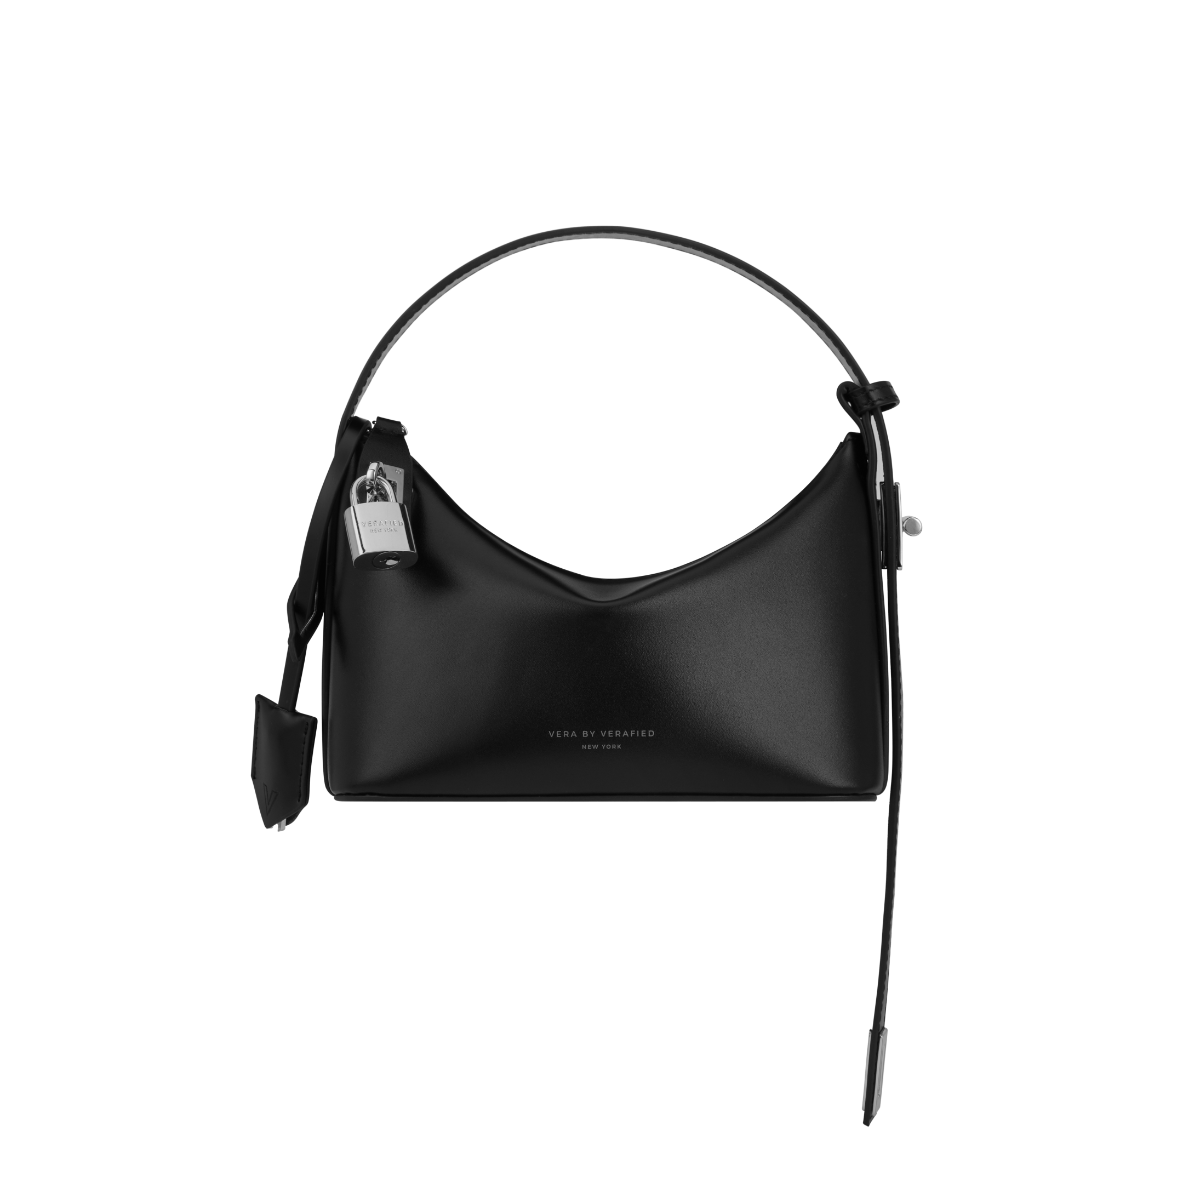 Mini Silver Black Hobo Bag - Verafied New York